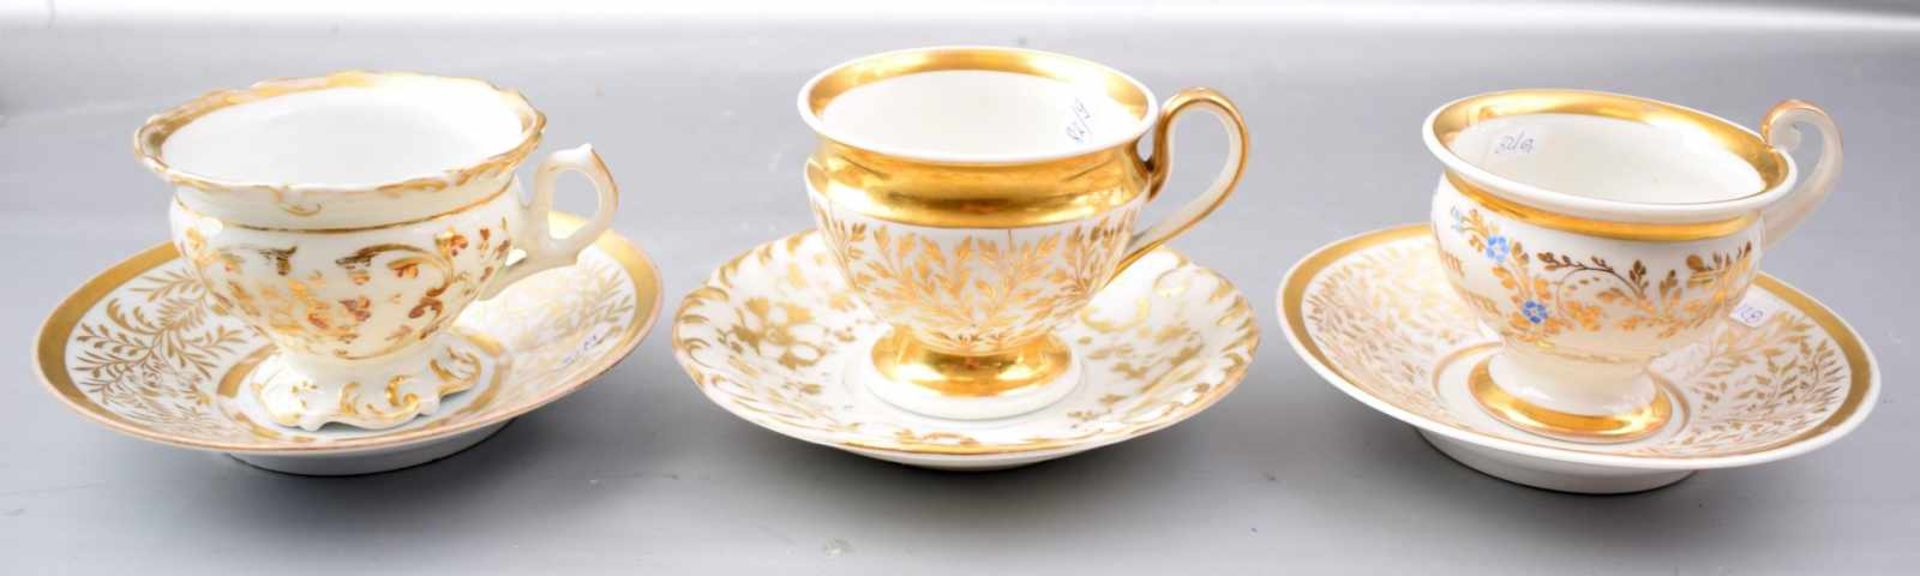 Drei Tassen mit Untertasse, aufwendig mit goldenen Ranken und Ornamenten verziert, eine Tasse mit